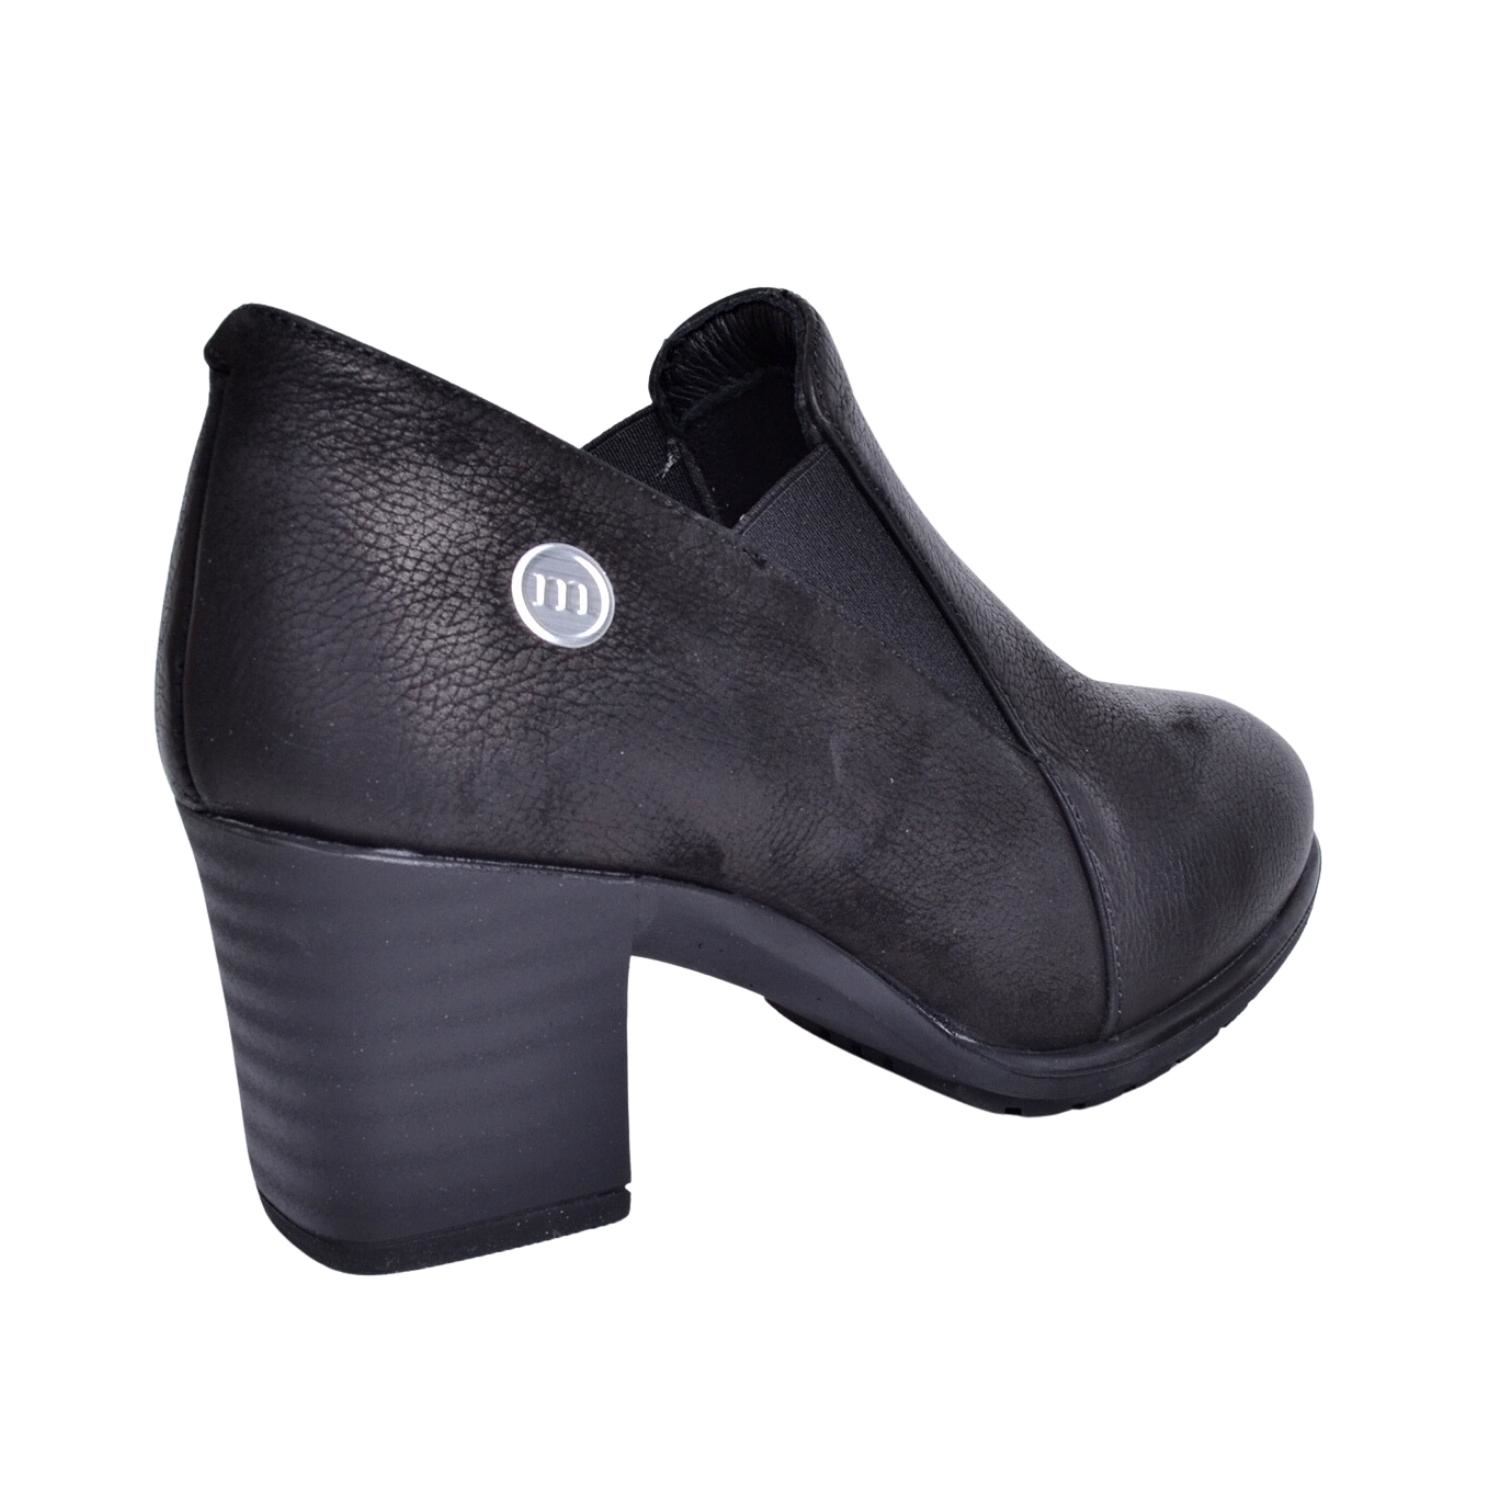 Mammamia D23KA-6115 Kadın Siyah Nubuk Deri Ayakkabı